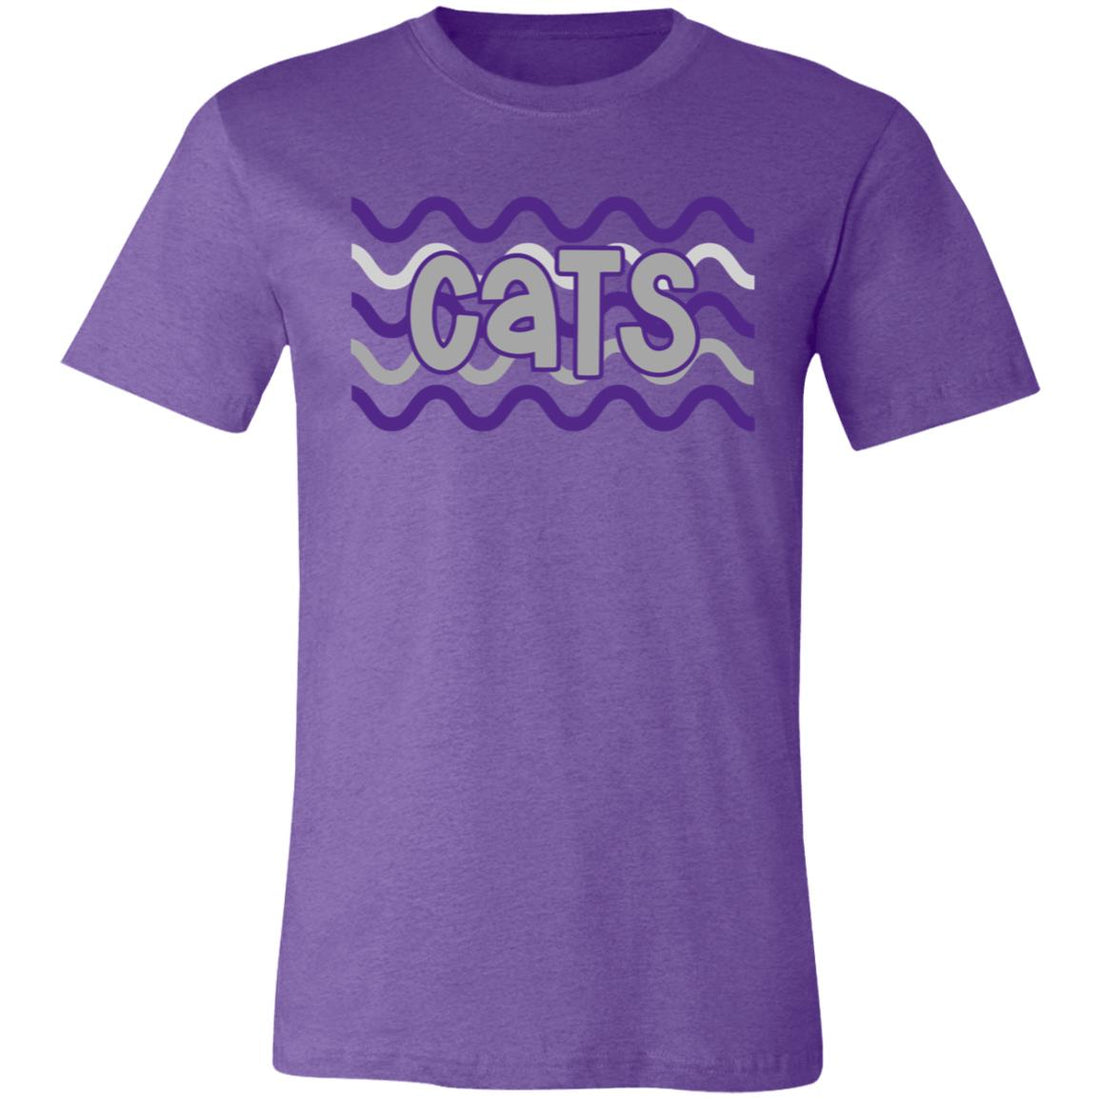 Cats Waves Unisex Jersey Short-Sleeve T-Shirt - T-Shirts - Positively Sassy - Cats Waves Unisex Jersey Short-Sleeve T-Shirt